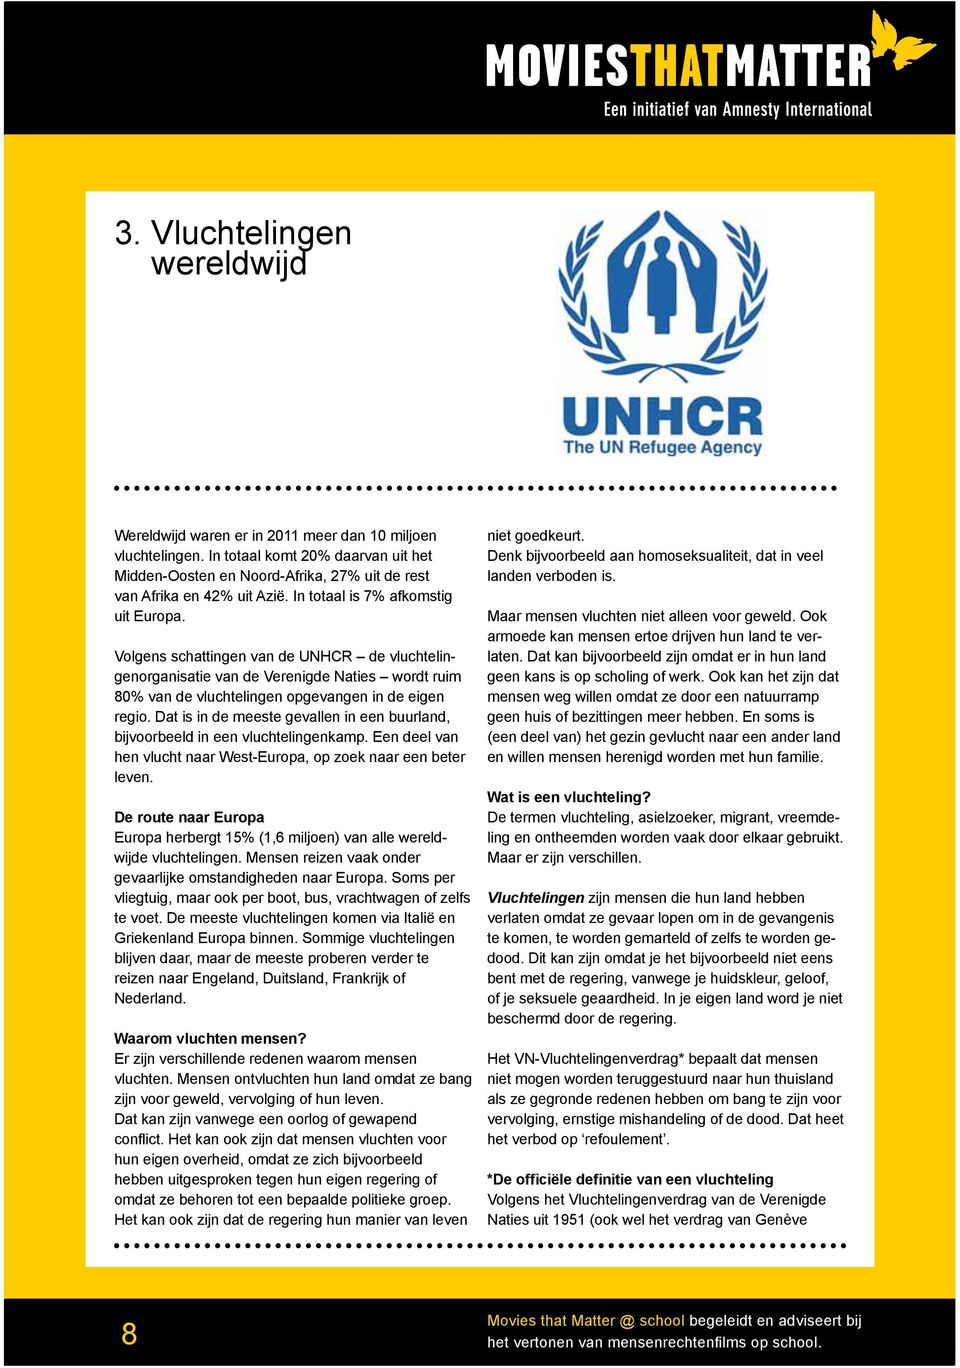 Volgens schattingen van de UNHCR de vluchtelingenorganisatie van de Verenigde Naties wordt ruim 80% van de vluchtelingen opgevangen in de eigen regio.